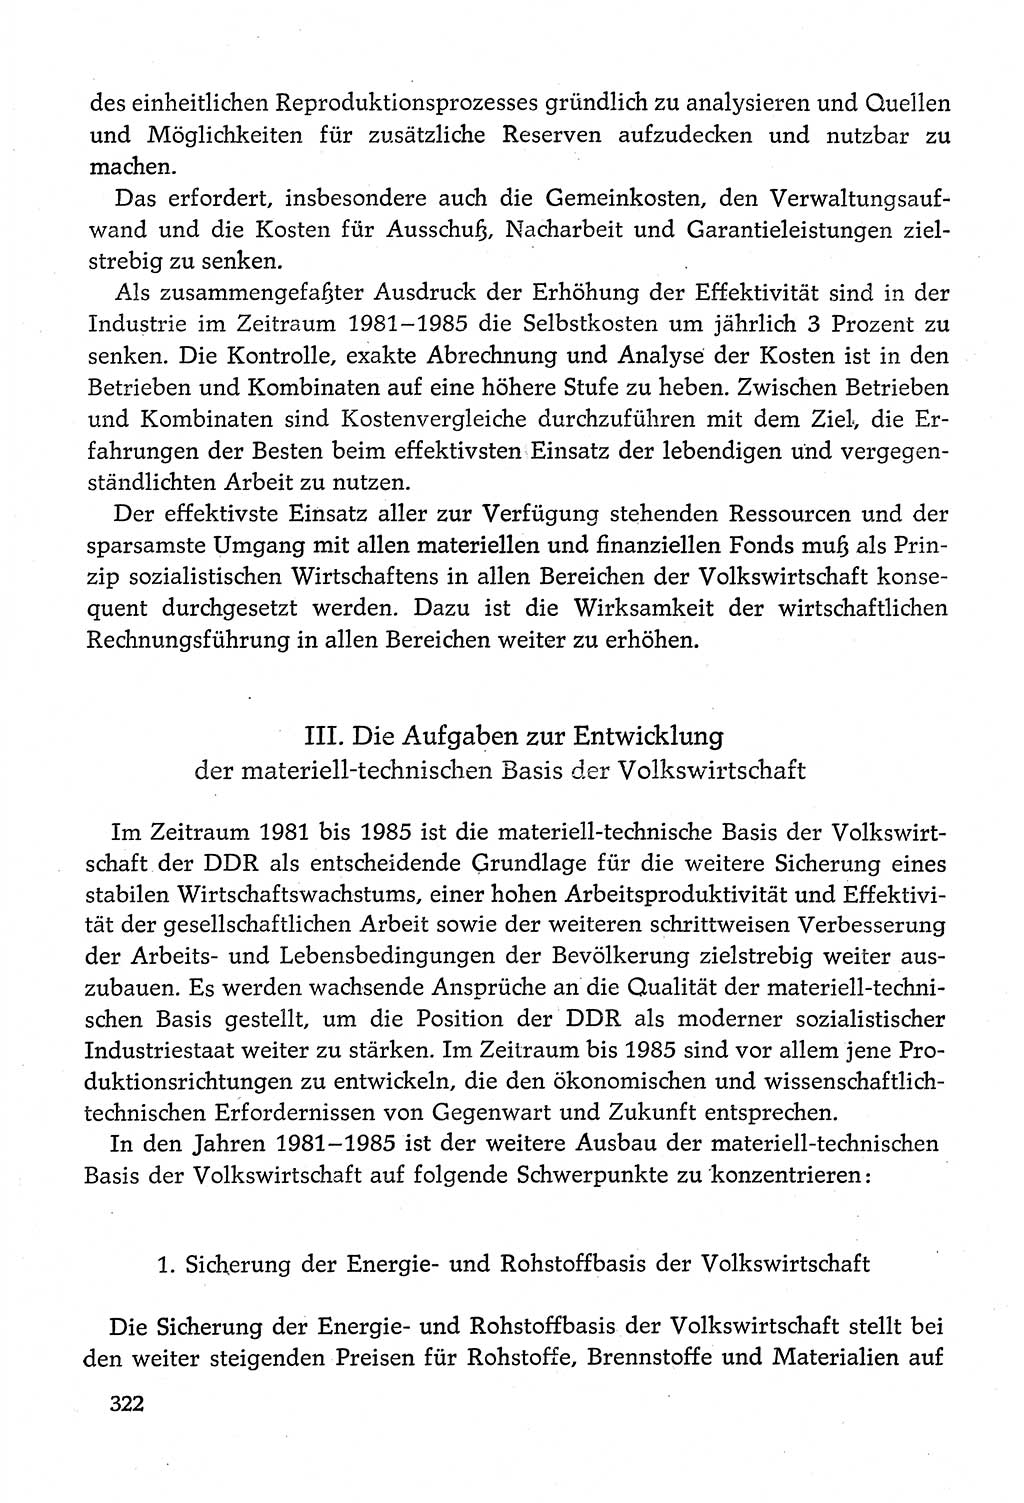 Dokumente der Sozialistischen Einheitspartei Deutschlands (SED) [Deutsche Demokratische Republik (DDR)] 1980-1981, Seite 322 (Dok. SED DDR 1980-1981, S. 322)